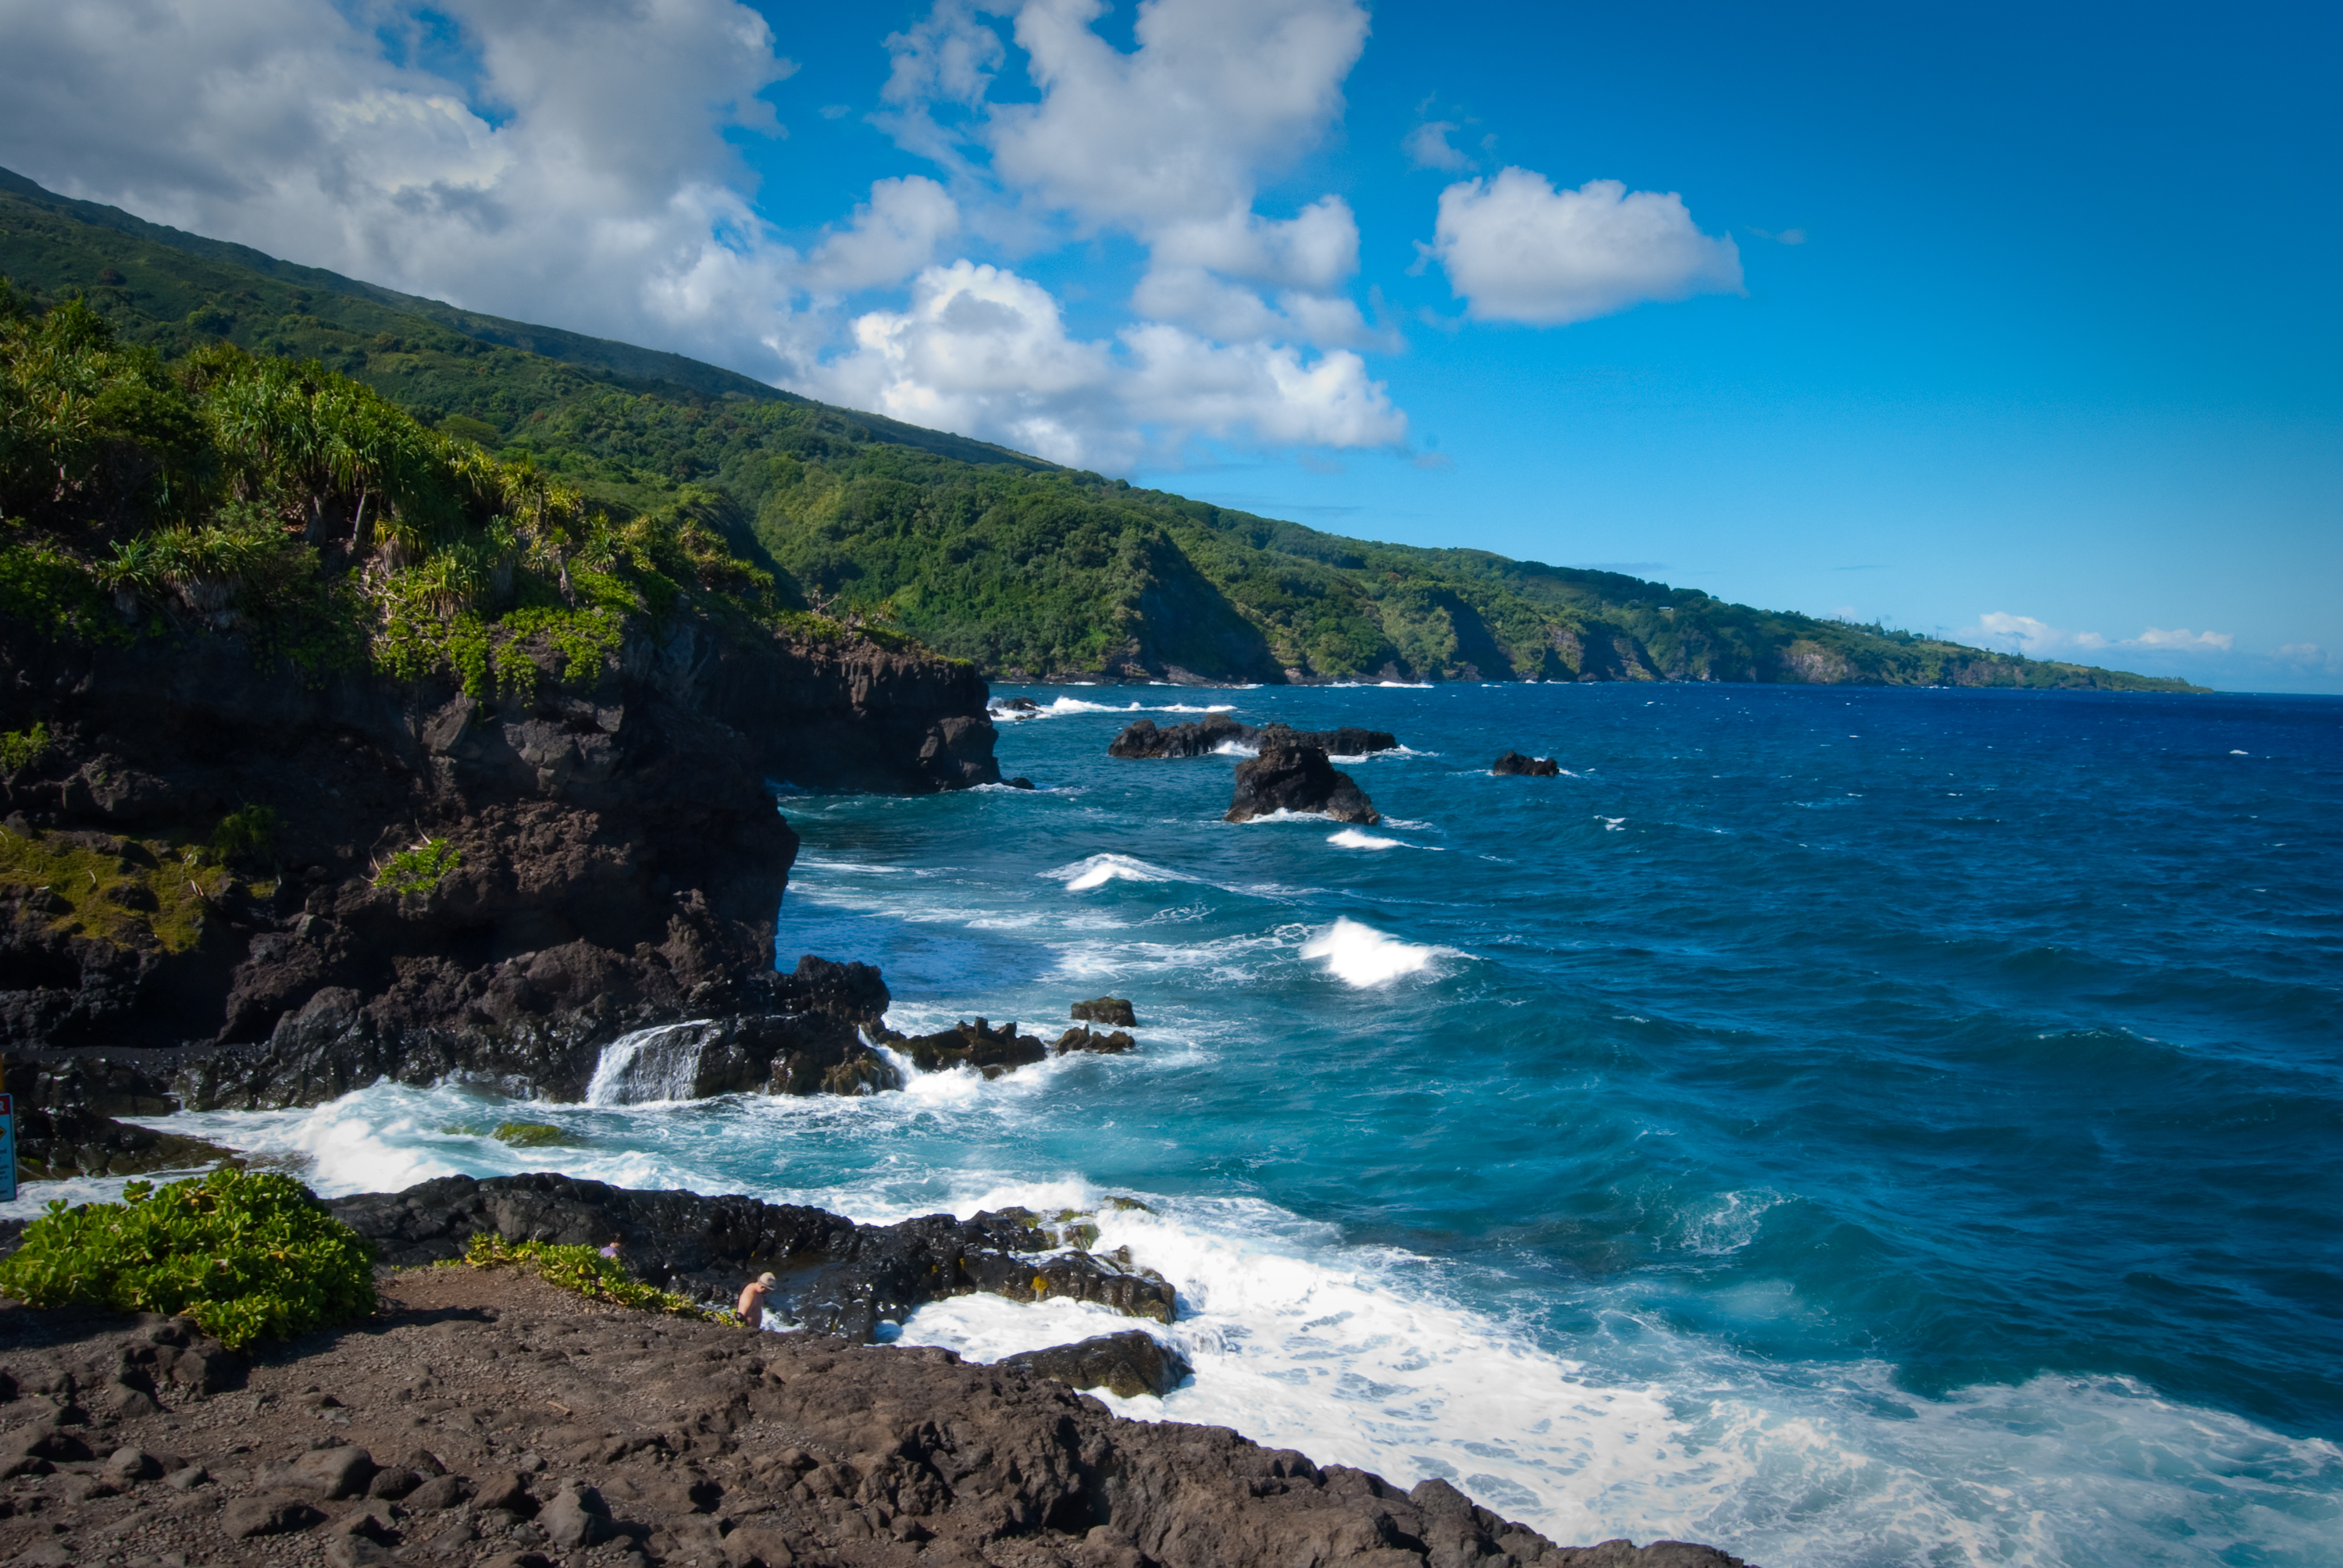 31-AUG-2013: Maui's southeast coast at Ohe'o Gulch, AKA the Seven Sacred Pools.